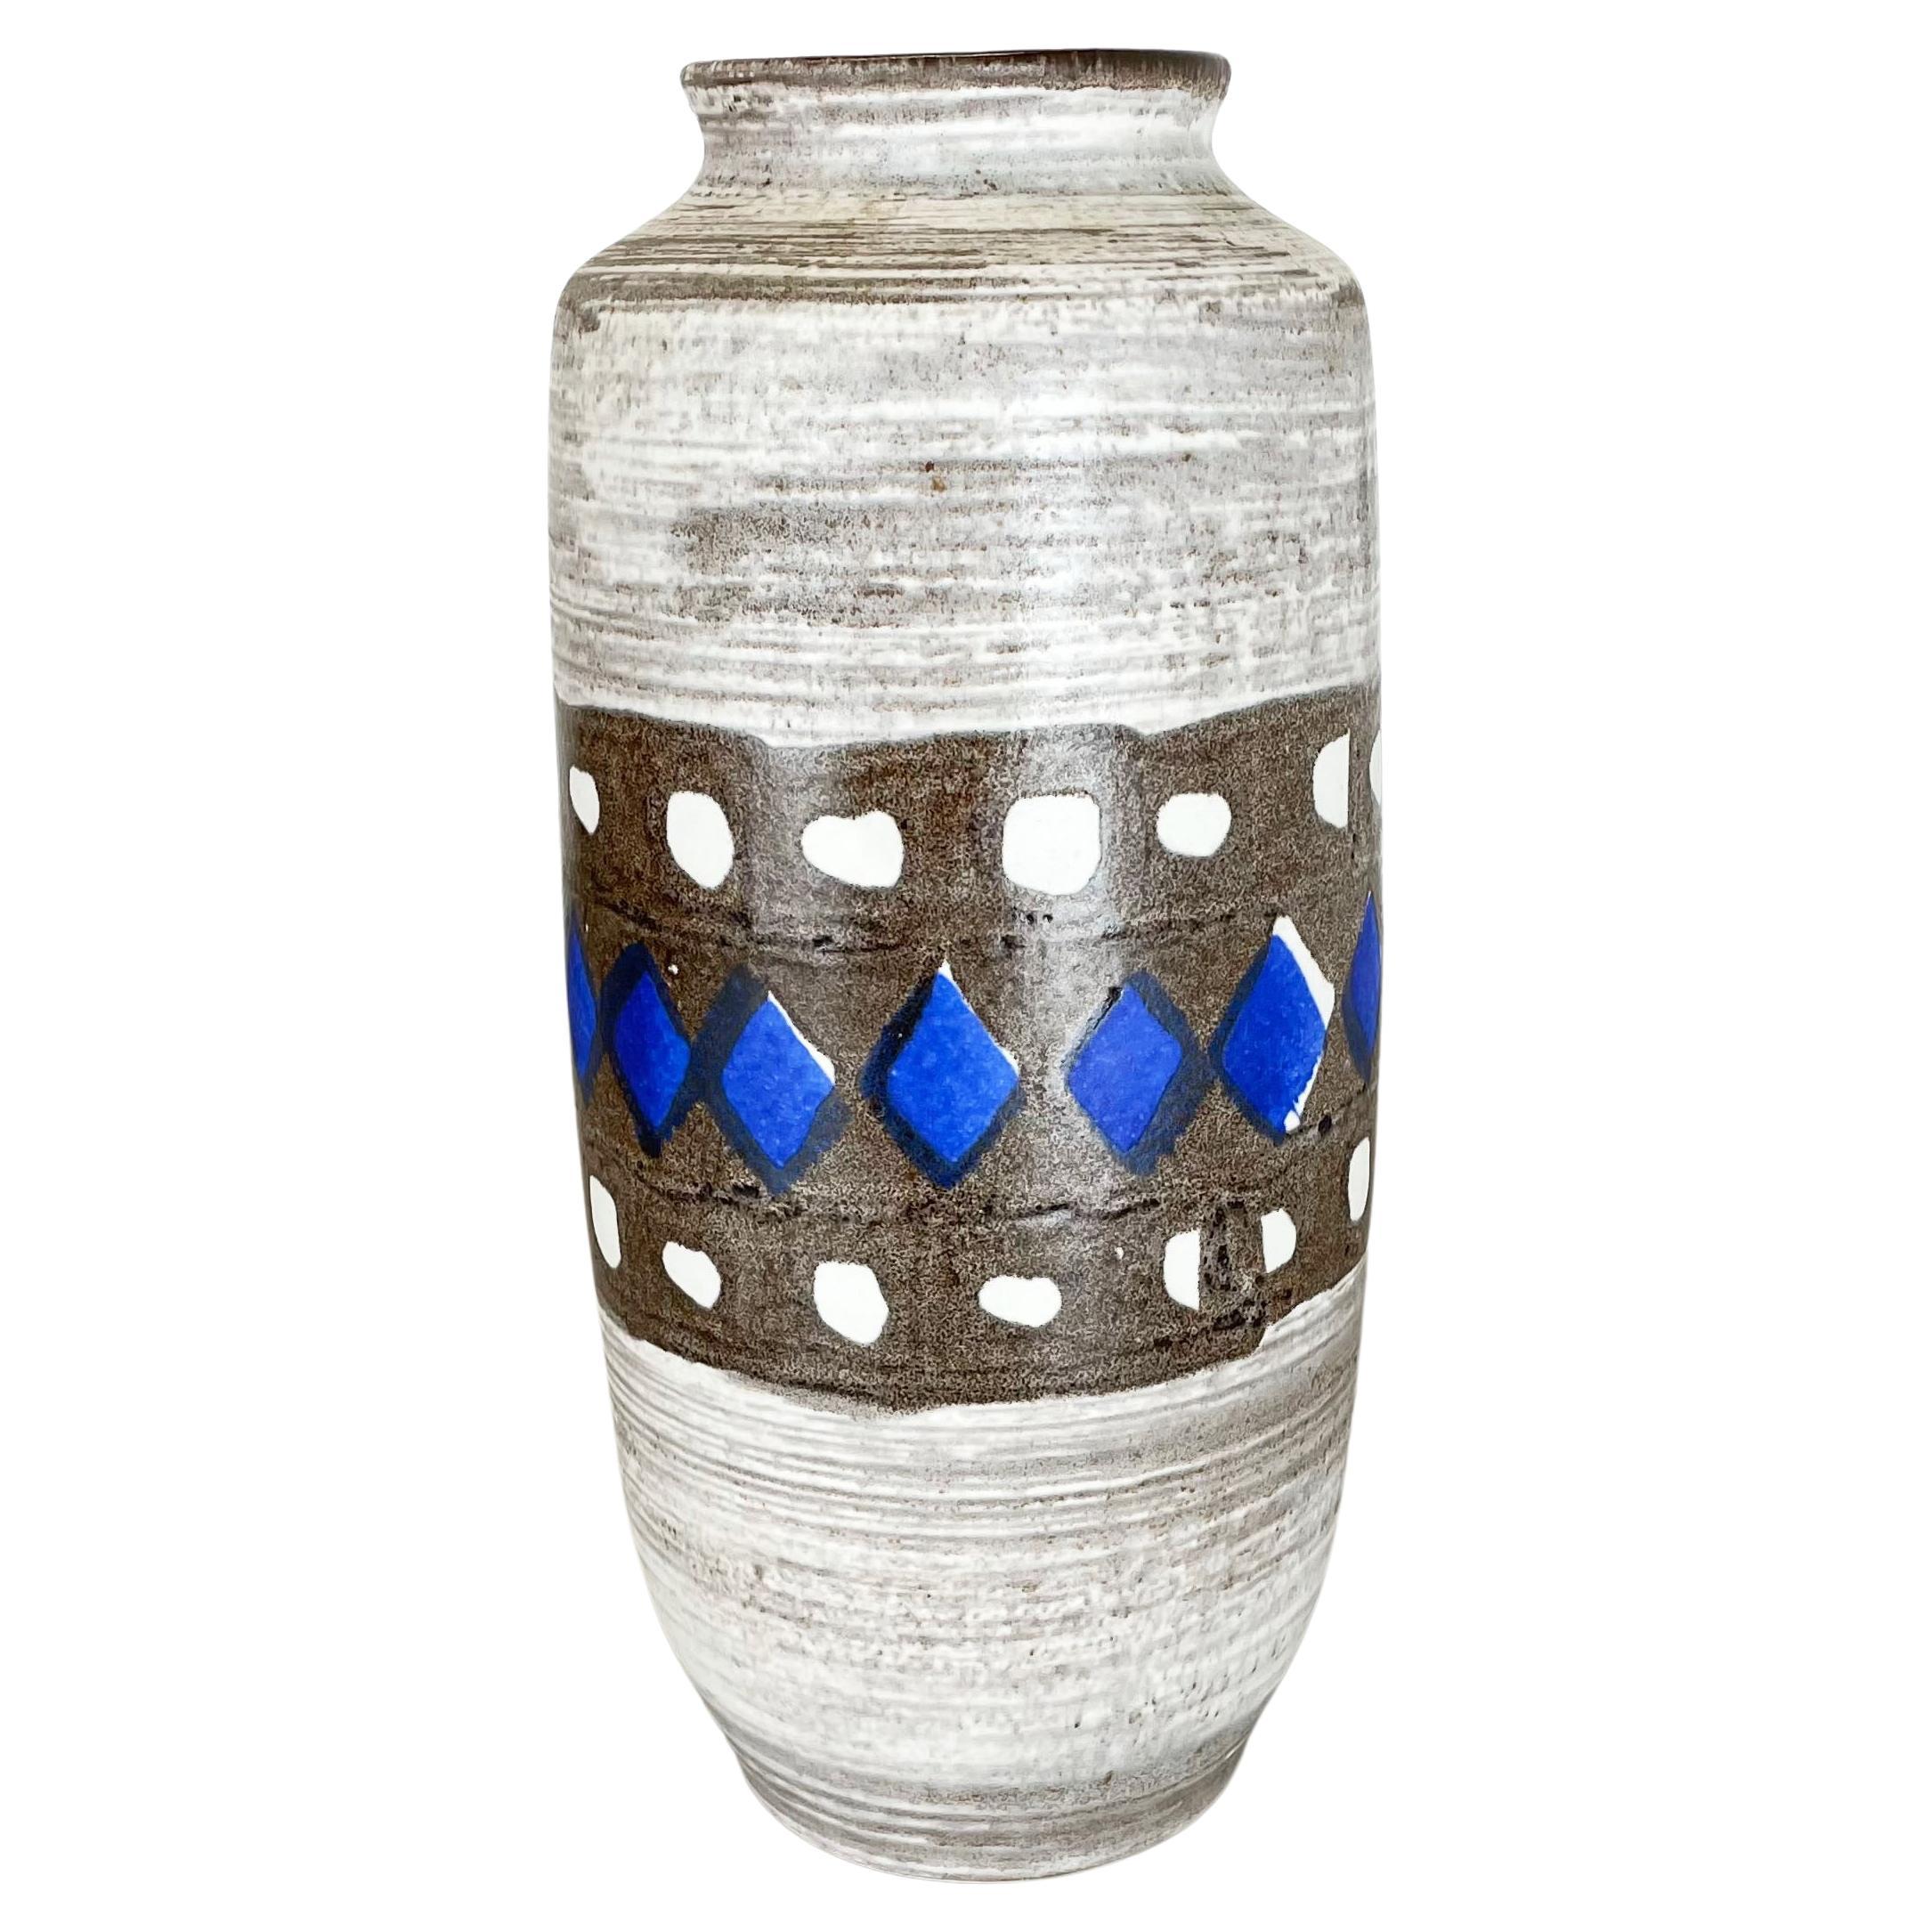 Keramikvase Bali 37 cm hoch sandfarben mit silber Waffeldekor 21 3150B 